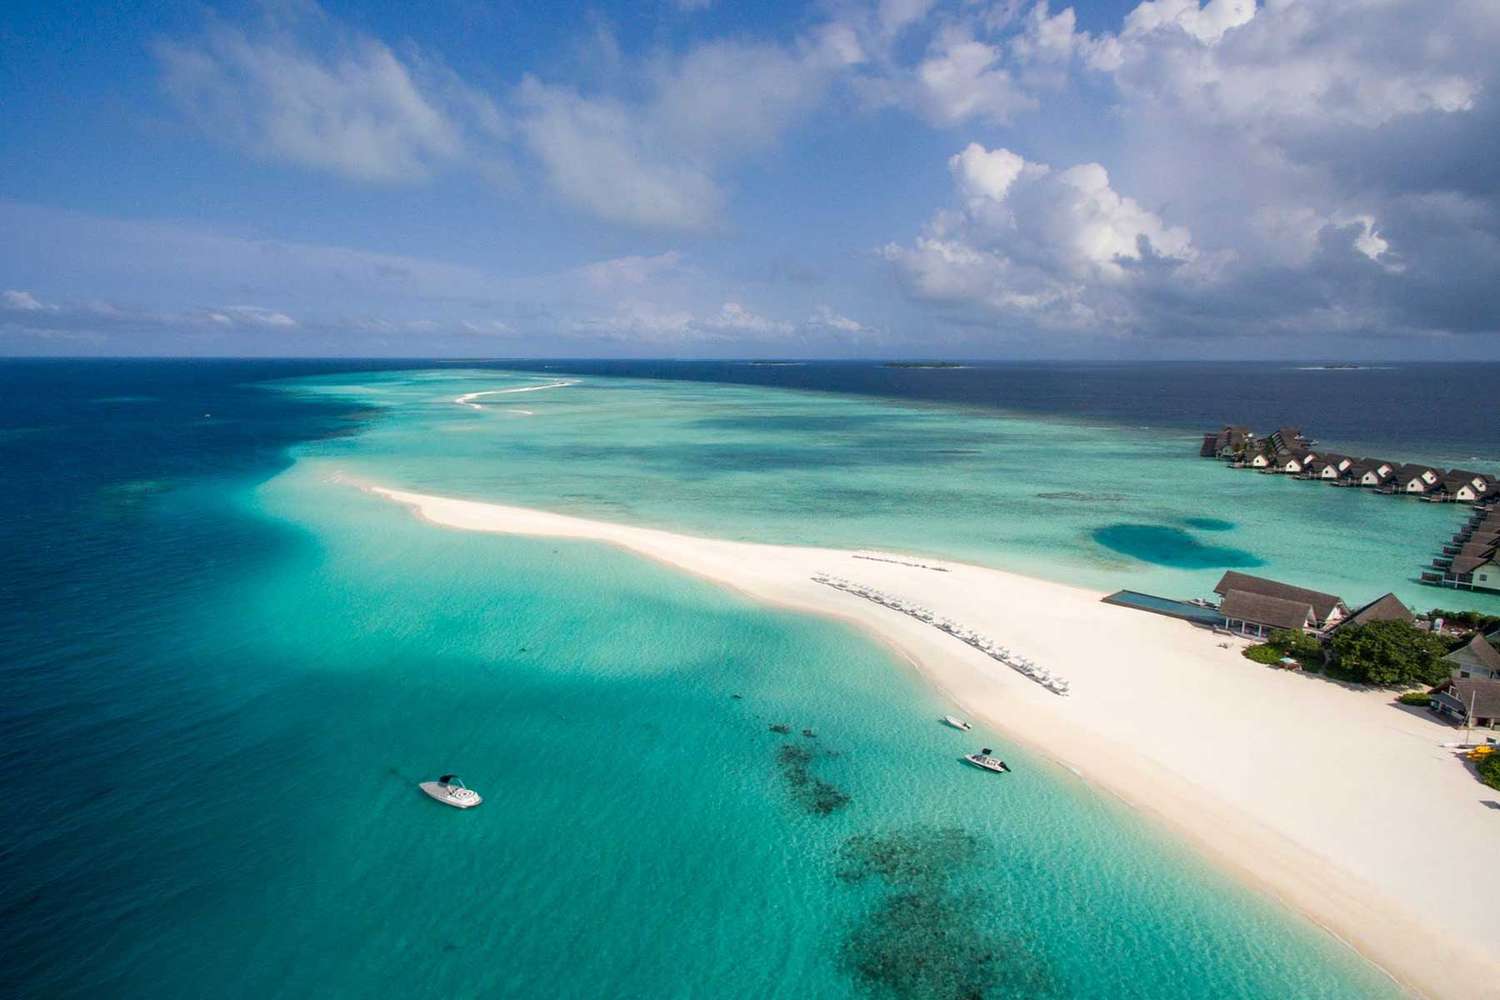 Landa Giraavaru Island aux Maldives, entourée d'eaux bleues claires